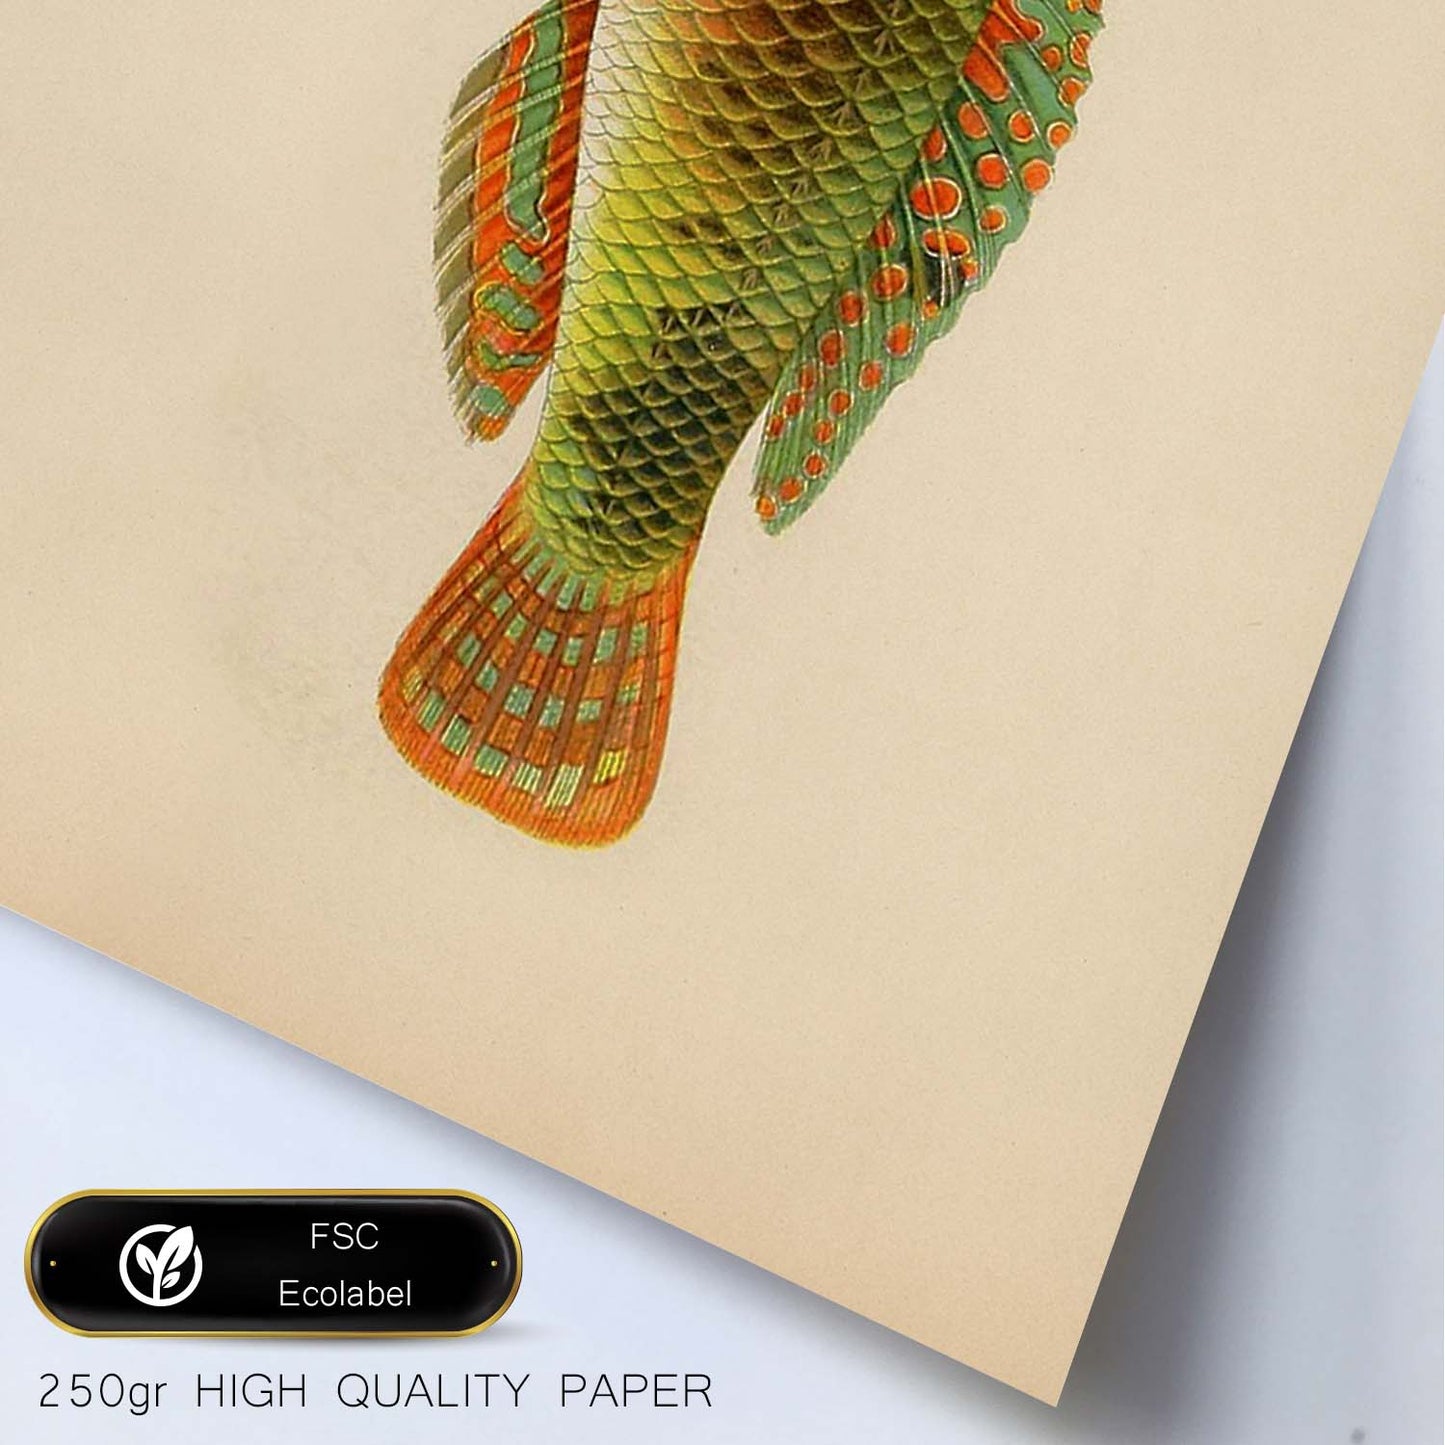 Lámina de pez naranja, verde y gris en , fondo papel vintage.-Artwork-Nacnic-Nacnic Estudio SL